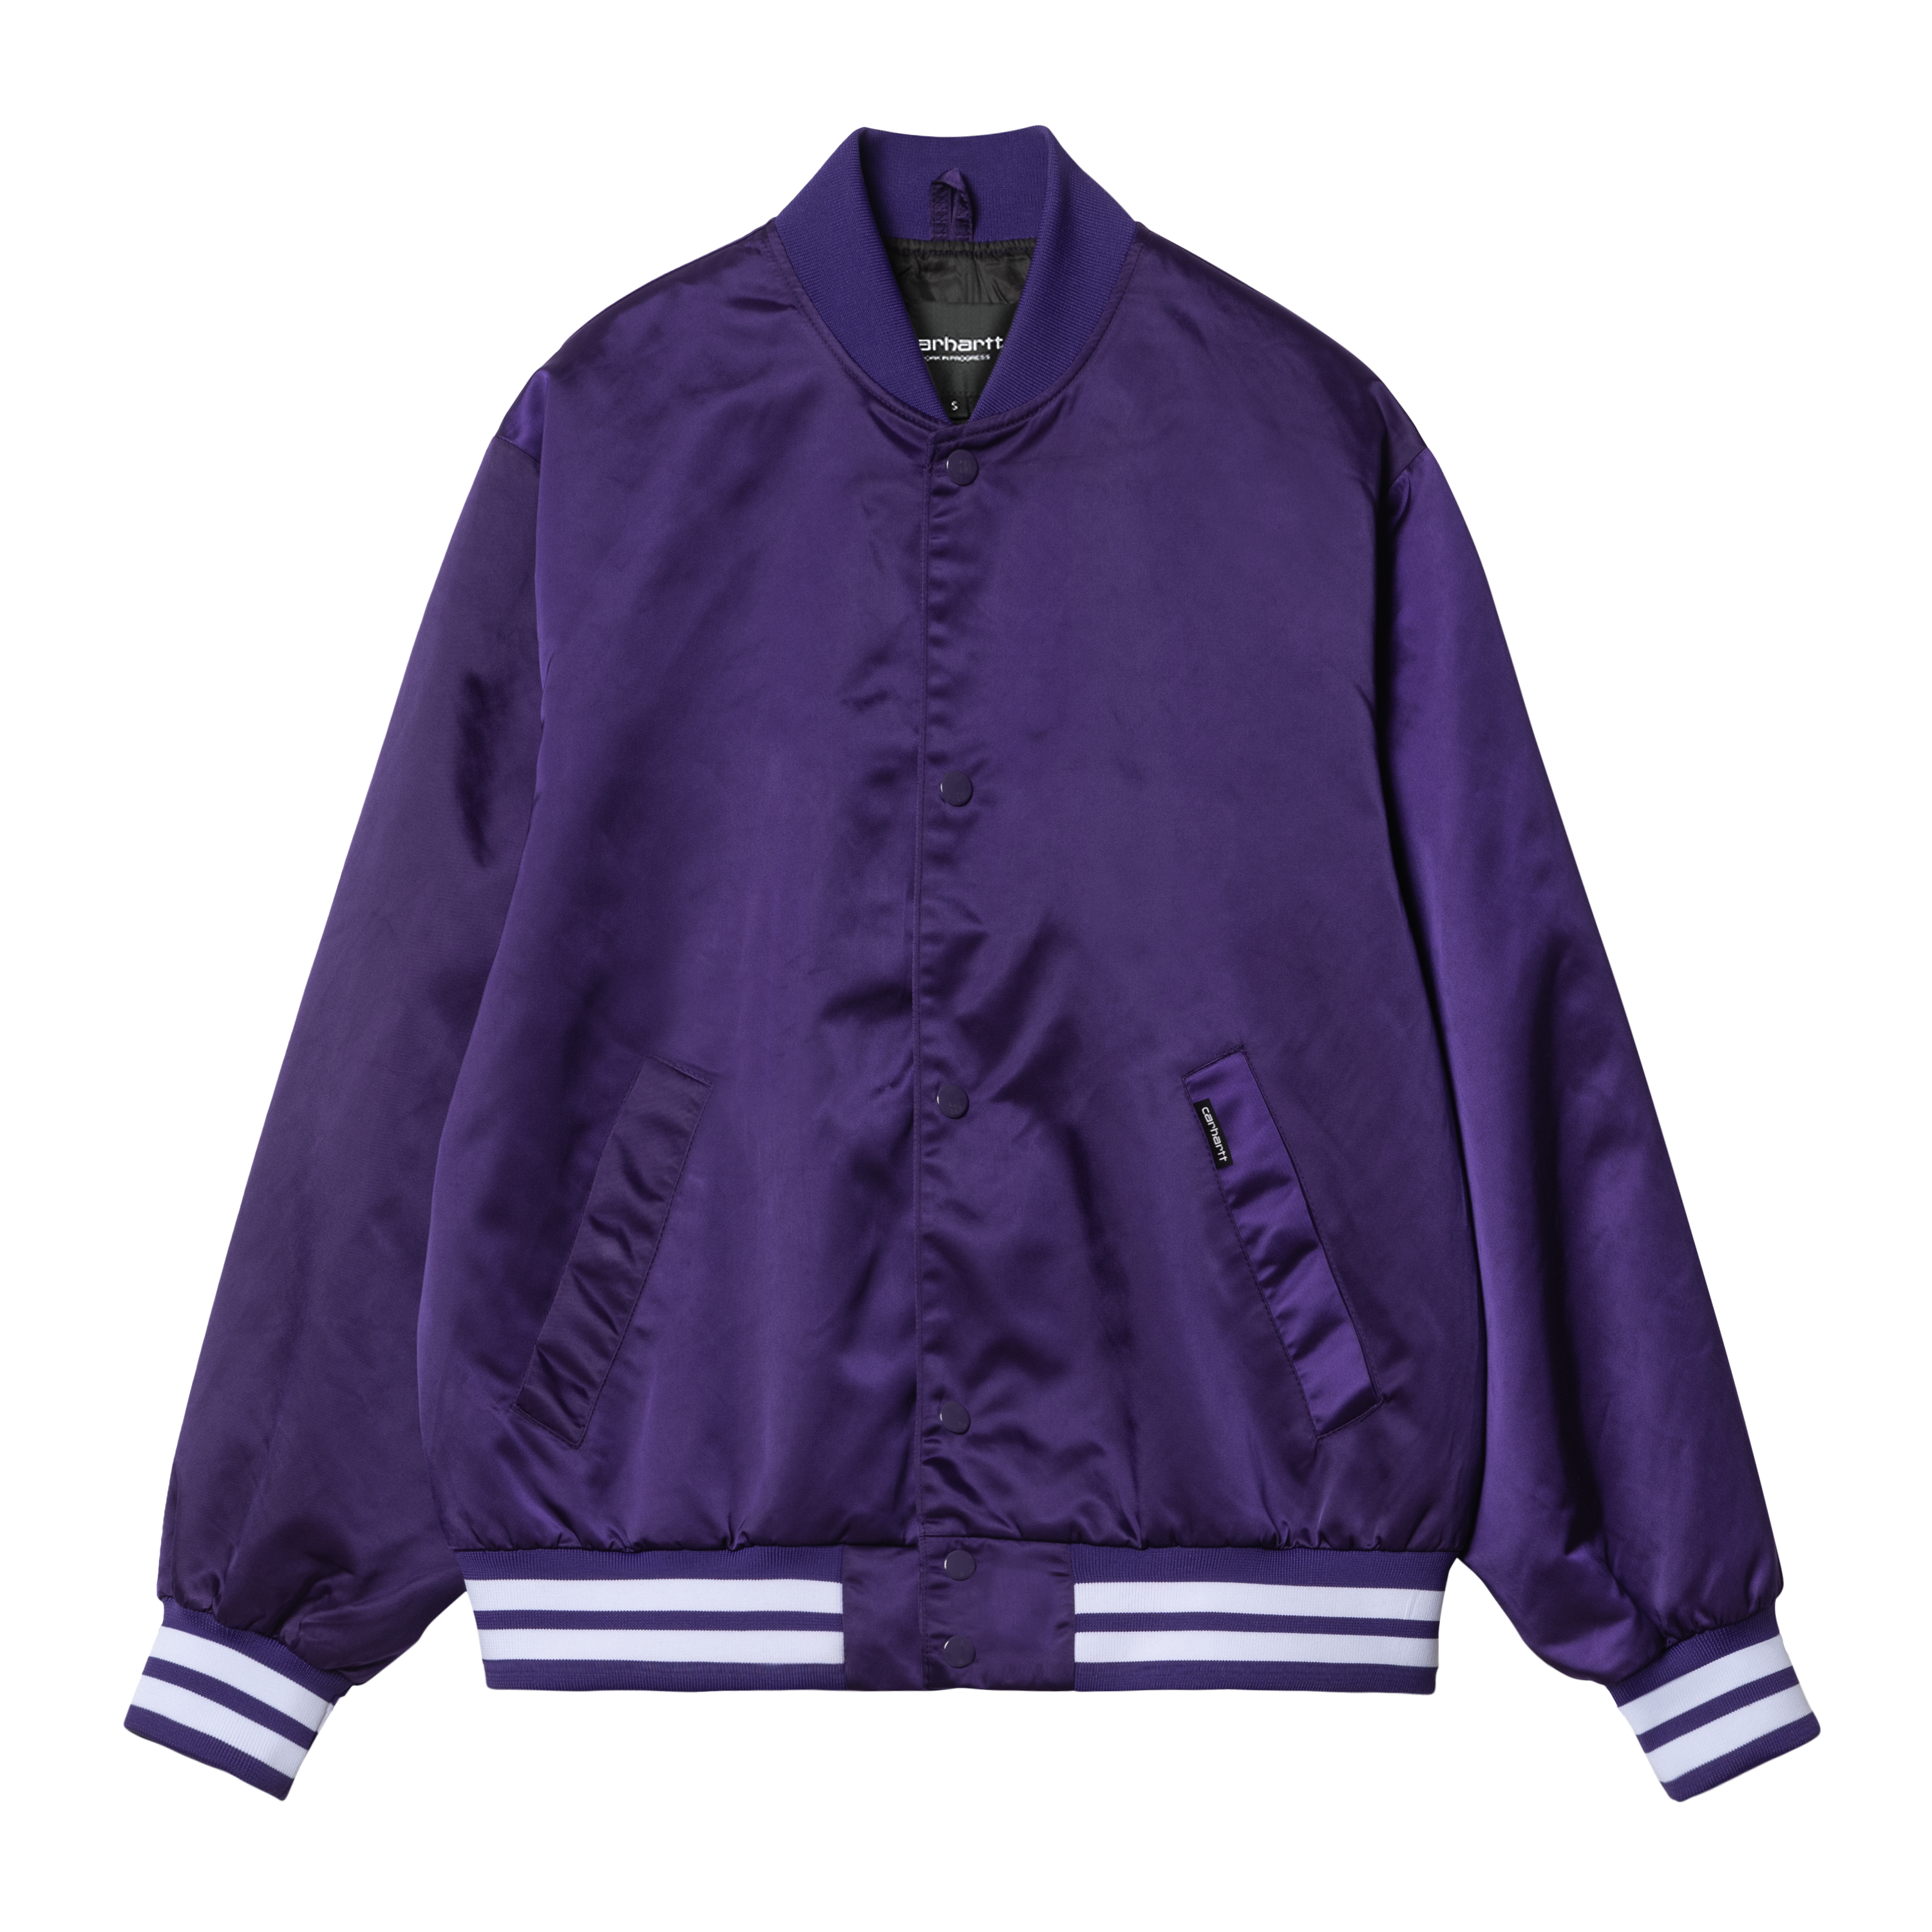 Carhartt WIP Women’s Class of 89 Bomber Jacket in Purple